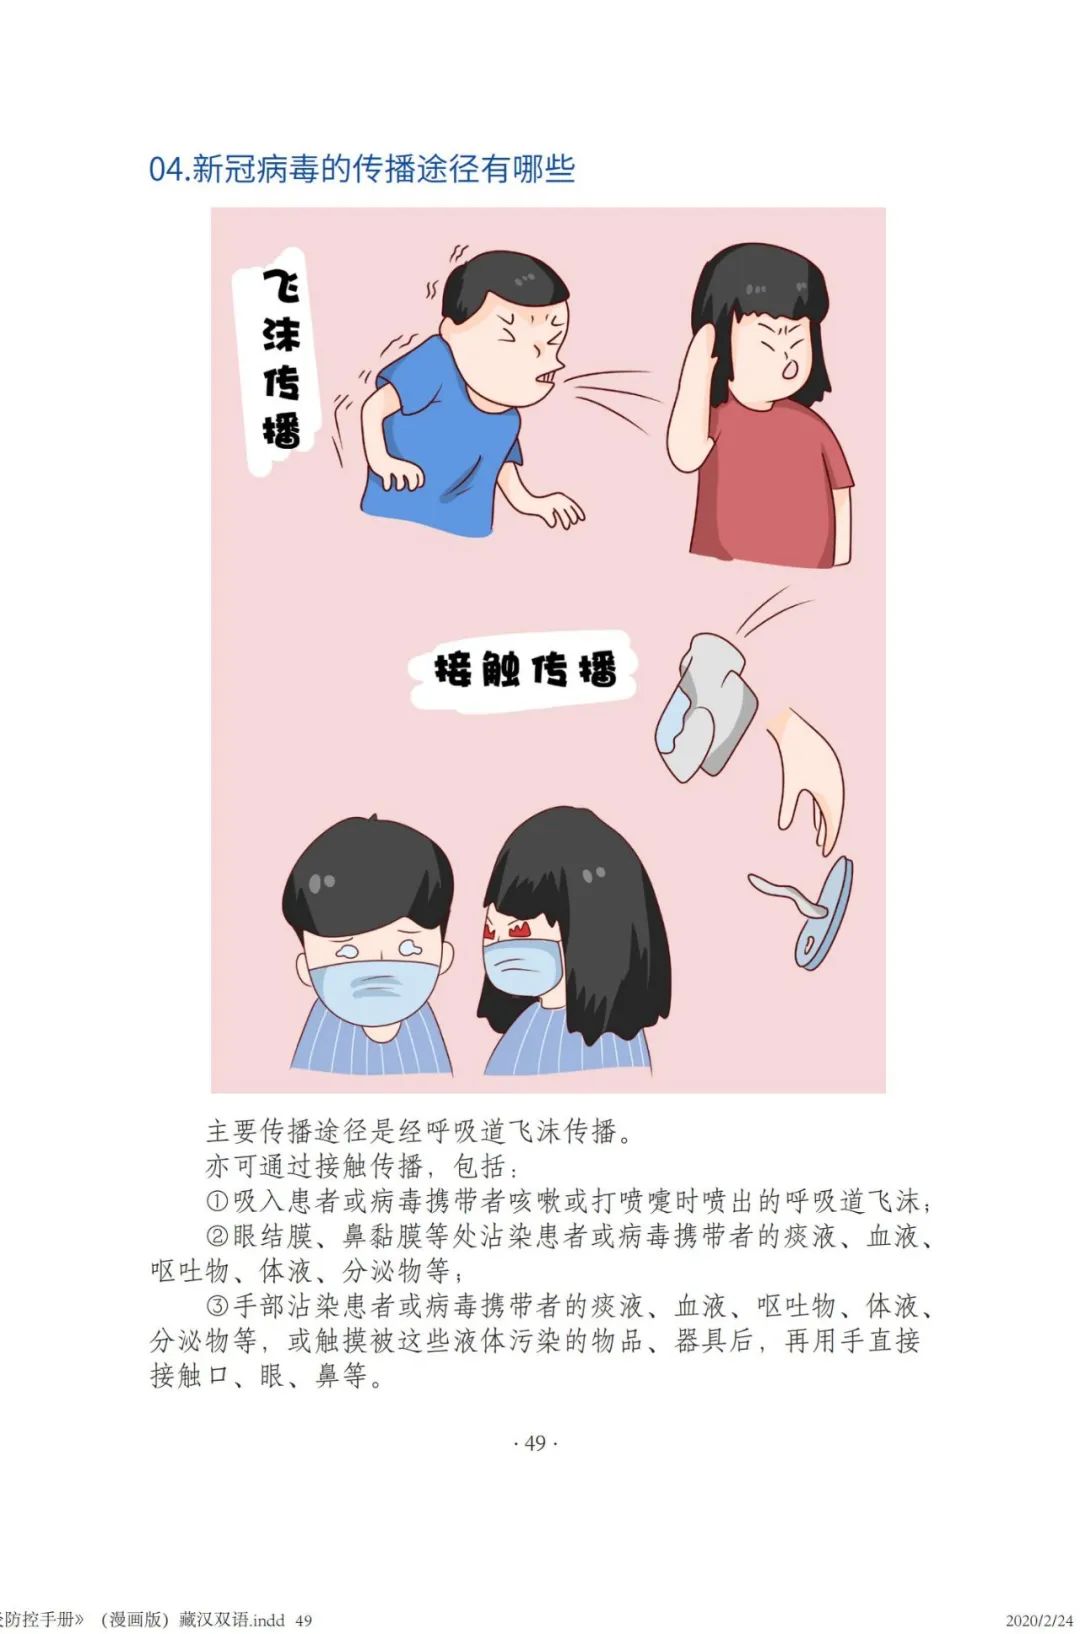 新冠肺炎防控手册(漫画版)汉语(五)